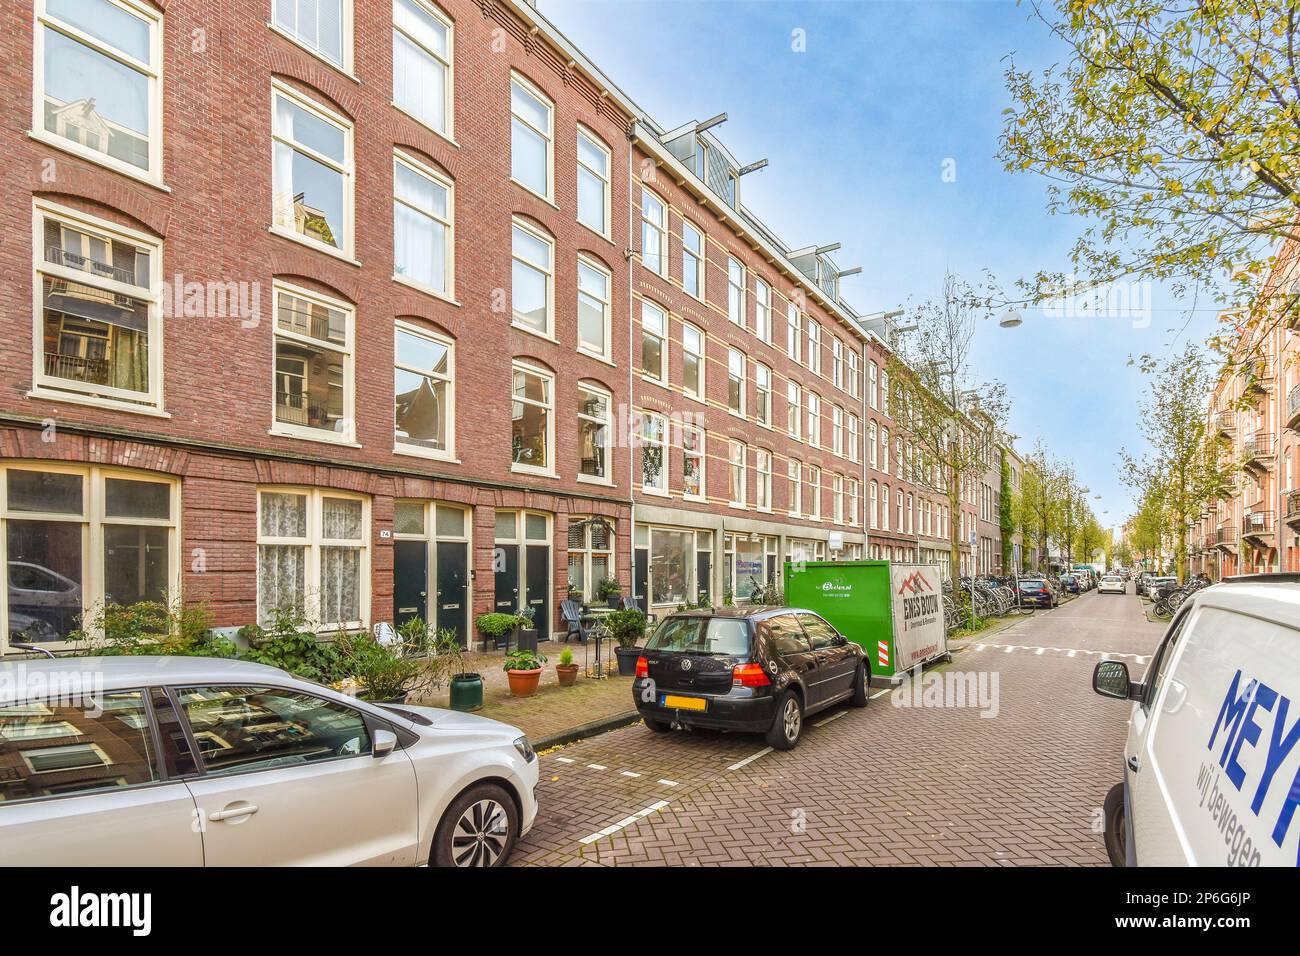 Amsterdam, Paesi Bassi - 10 aprile 2021: Una strada cittadina con auto parcheggiate lateralmente e edifici sullo sfondo, compreso un furgone bianco che percorre la strada Foto Stock